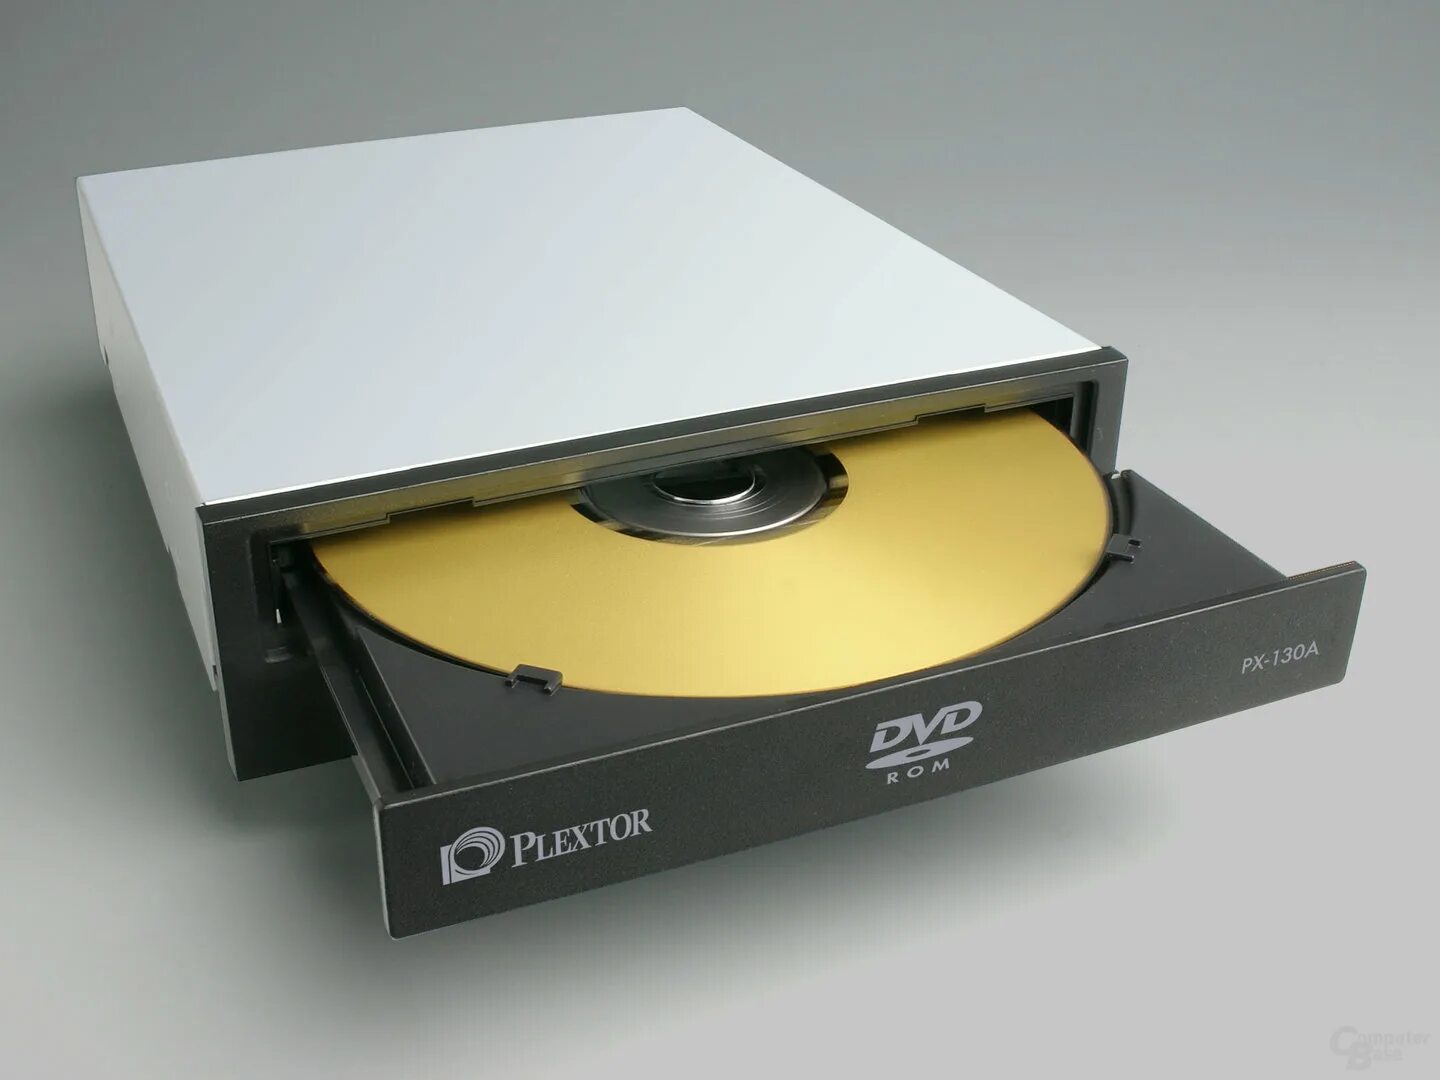 Привод DVD RW Plextor. Plextor px-130a. Оптический привод Plextor px-116a White. Plextor DVD-ROM. Cd dvd привод купить